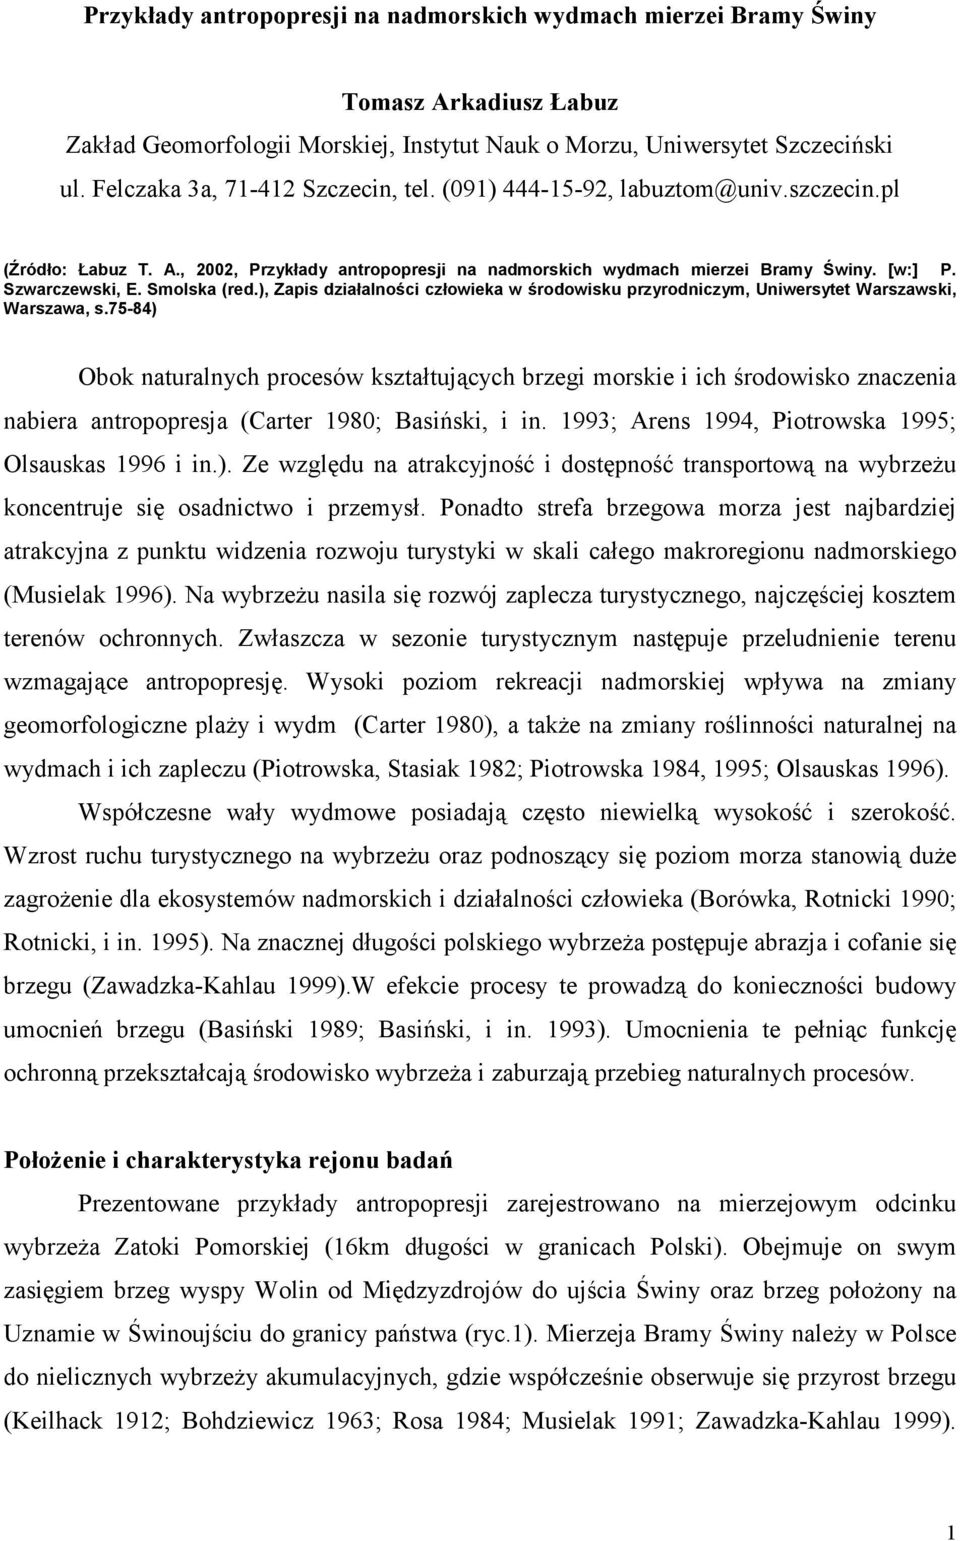 Smolska (red.), Zapis działalności człowieka w środowisku przyrodniczym, Uniwersytet Warszawski, Warszawa, s.